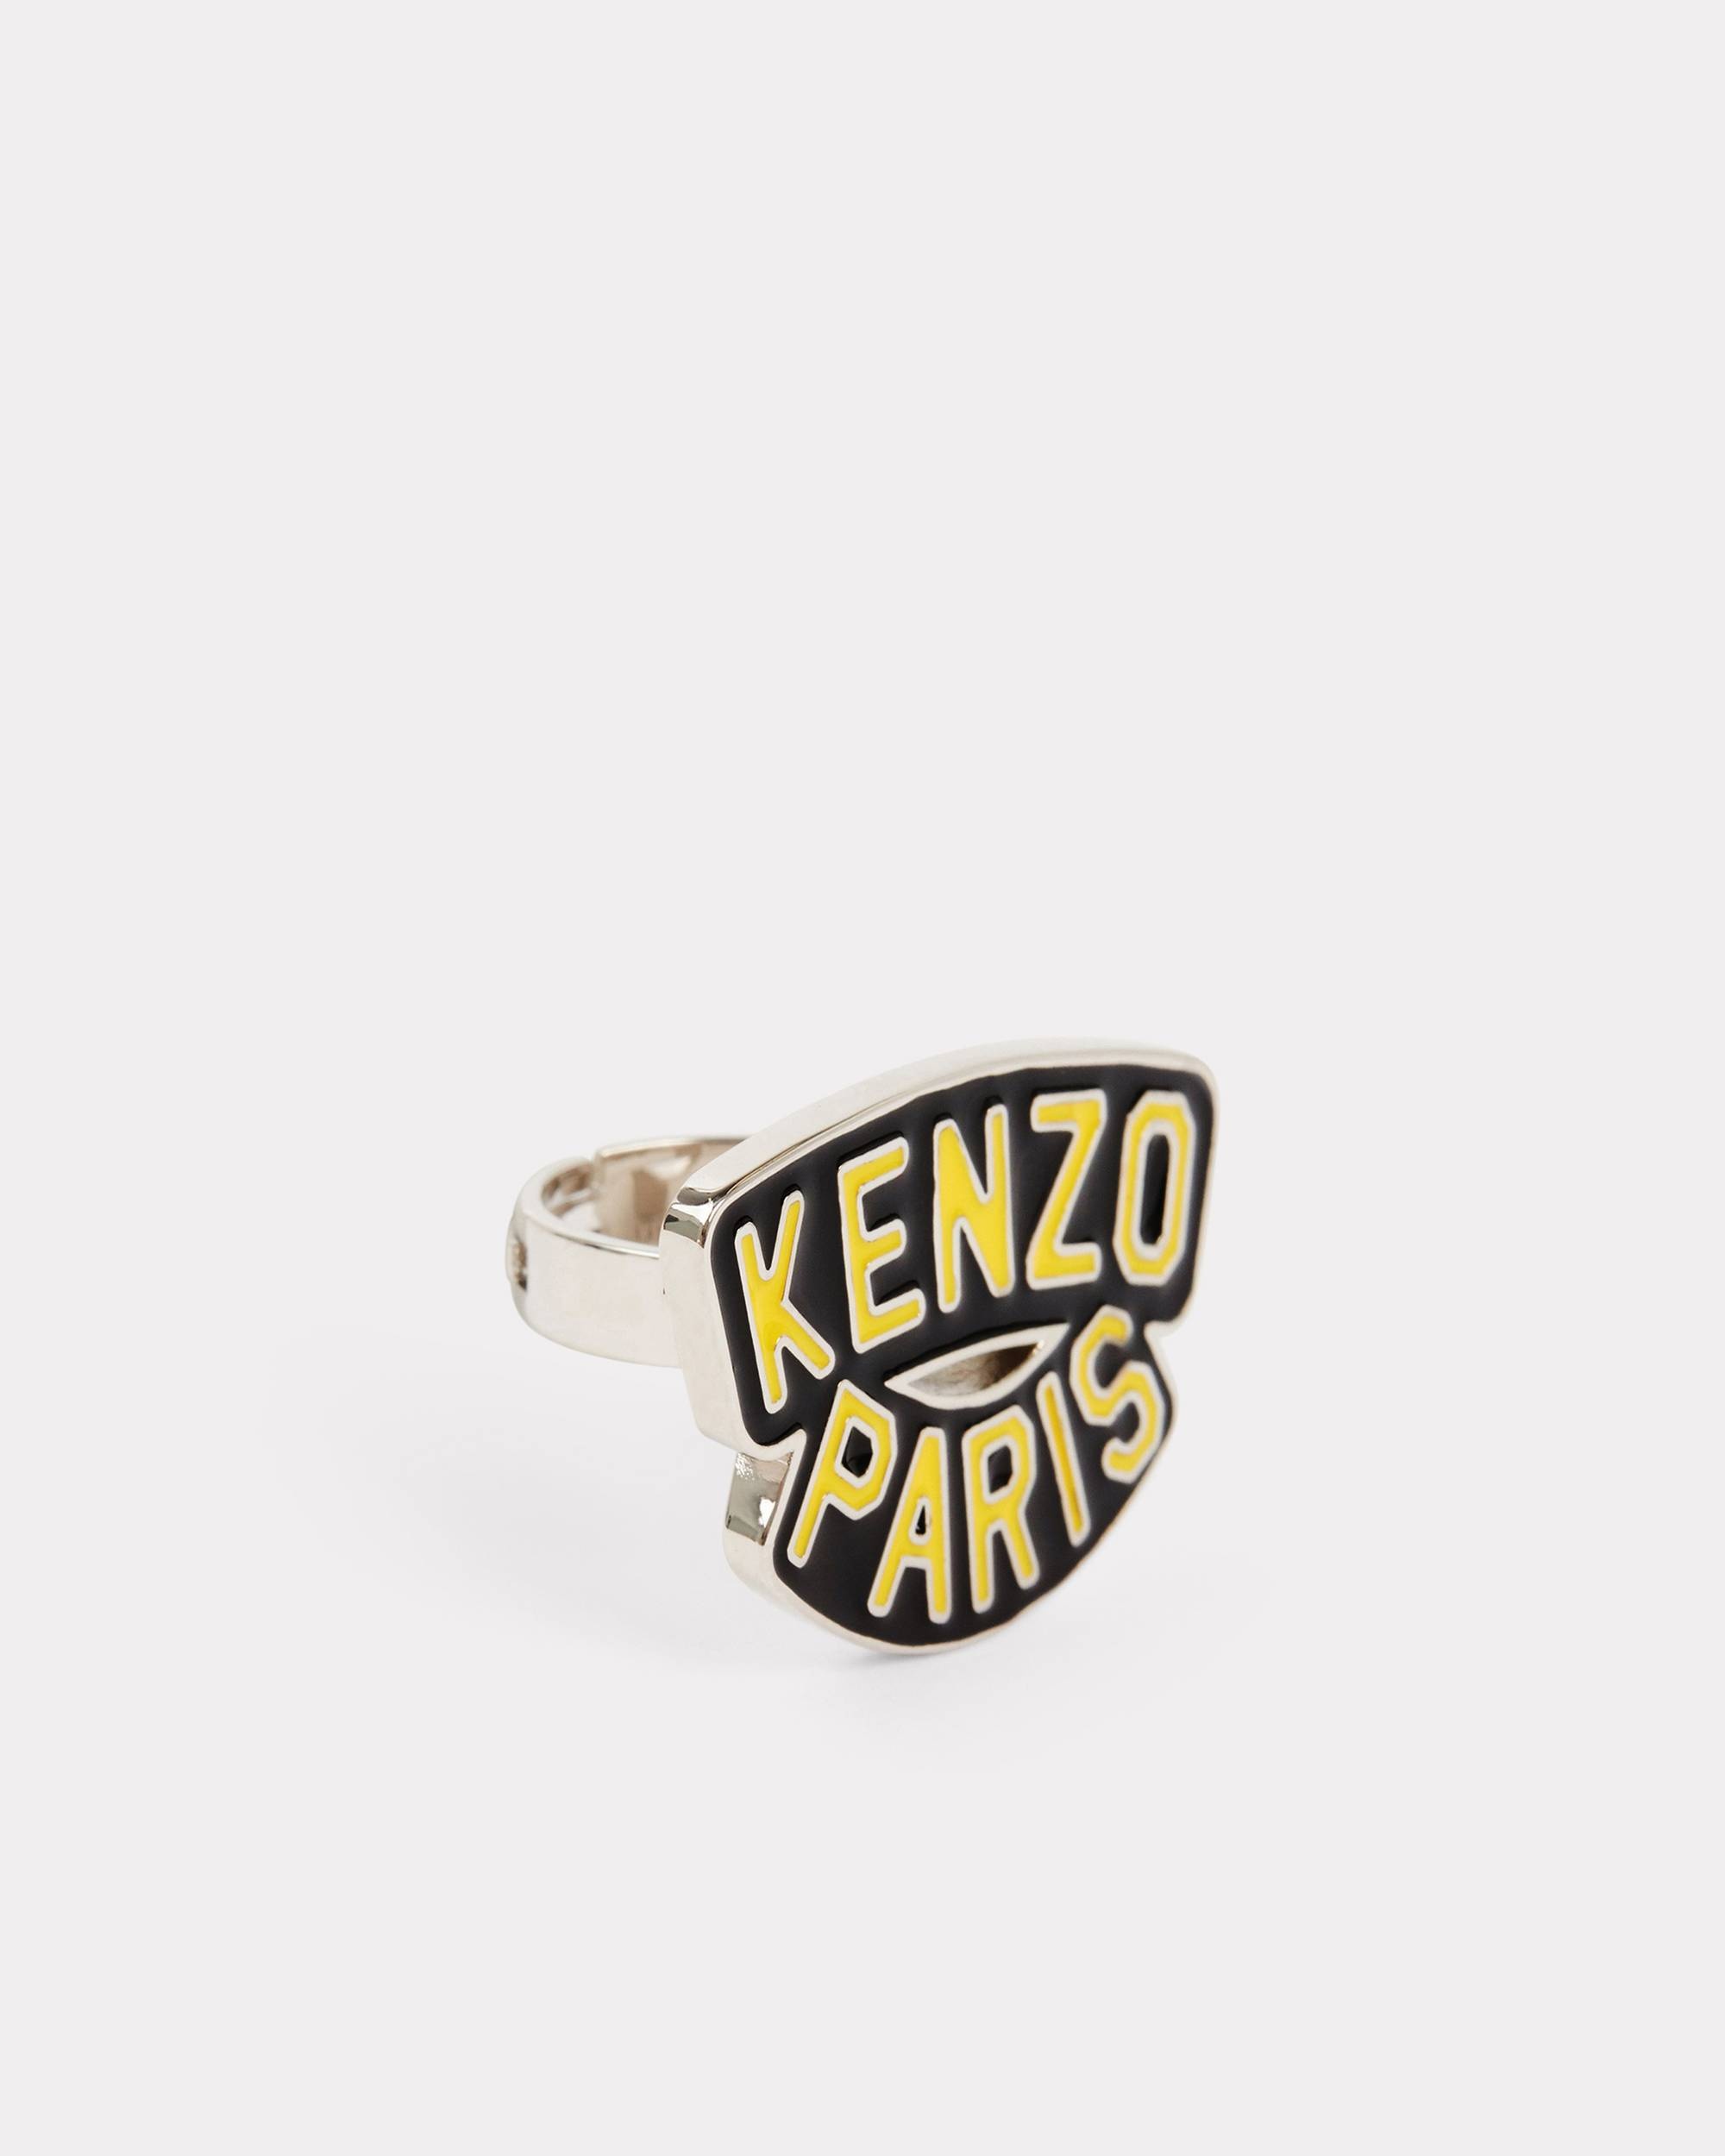 'KENZO Paris' ring - 3